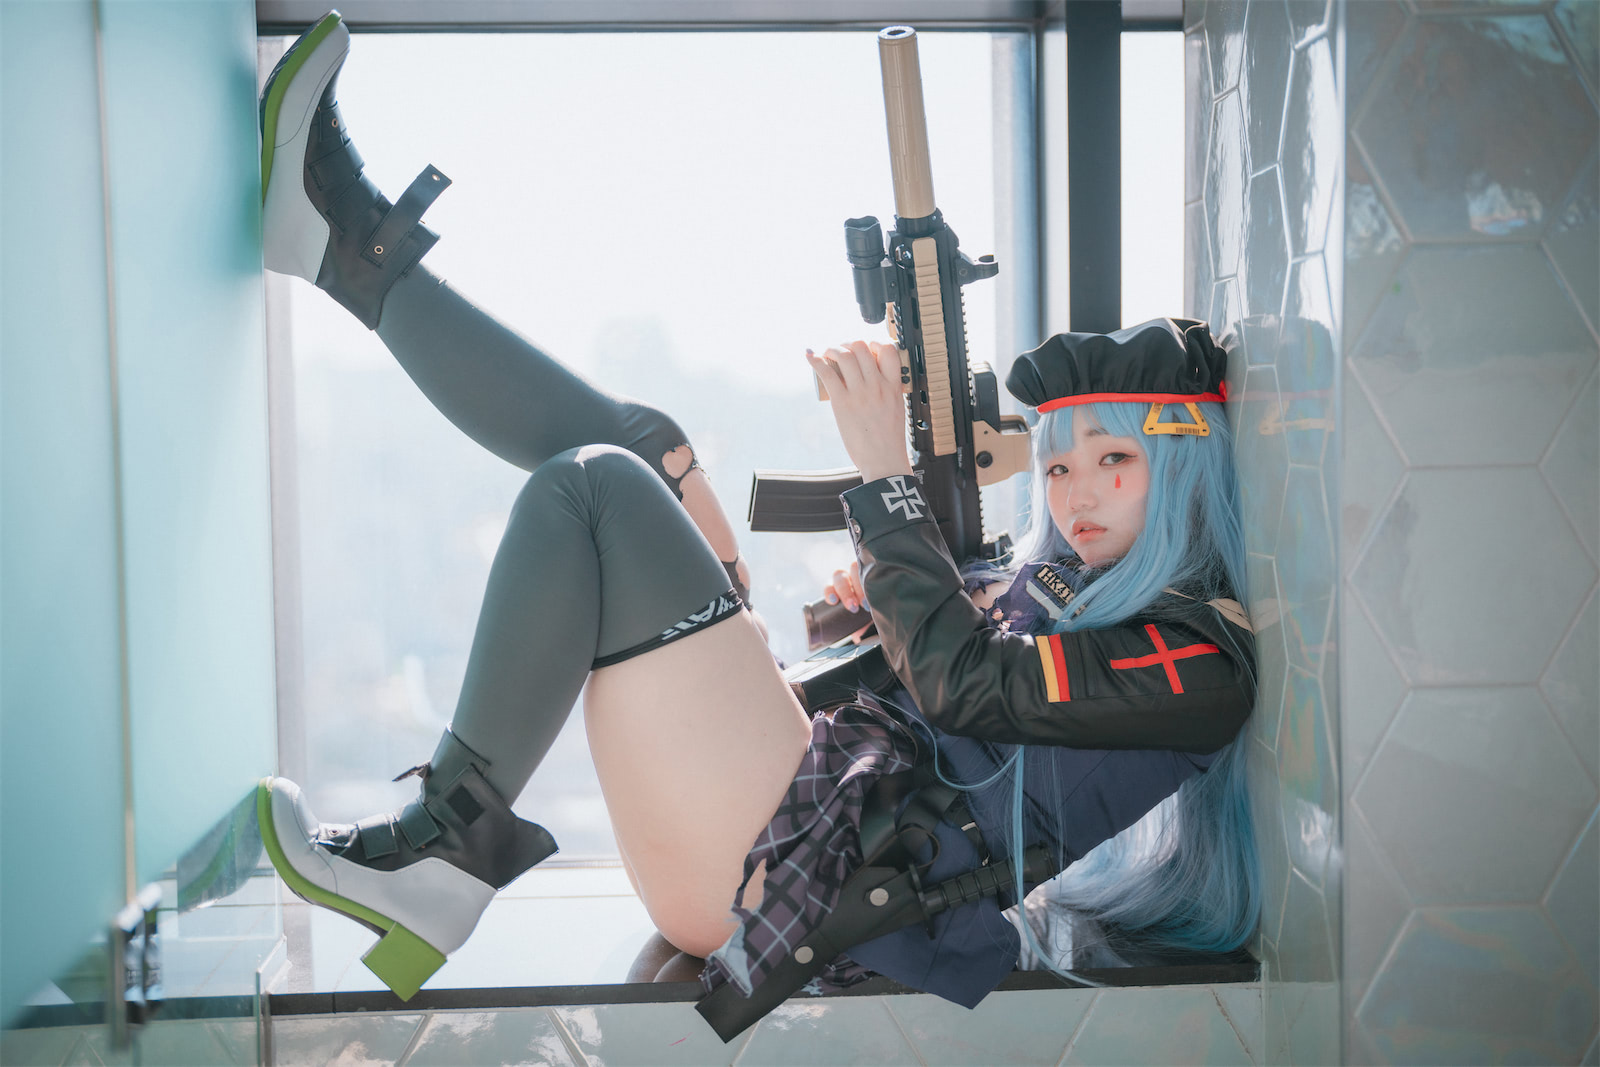 Mimmi少女前线HK416COS3